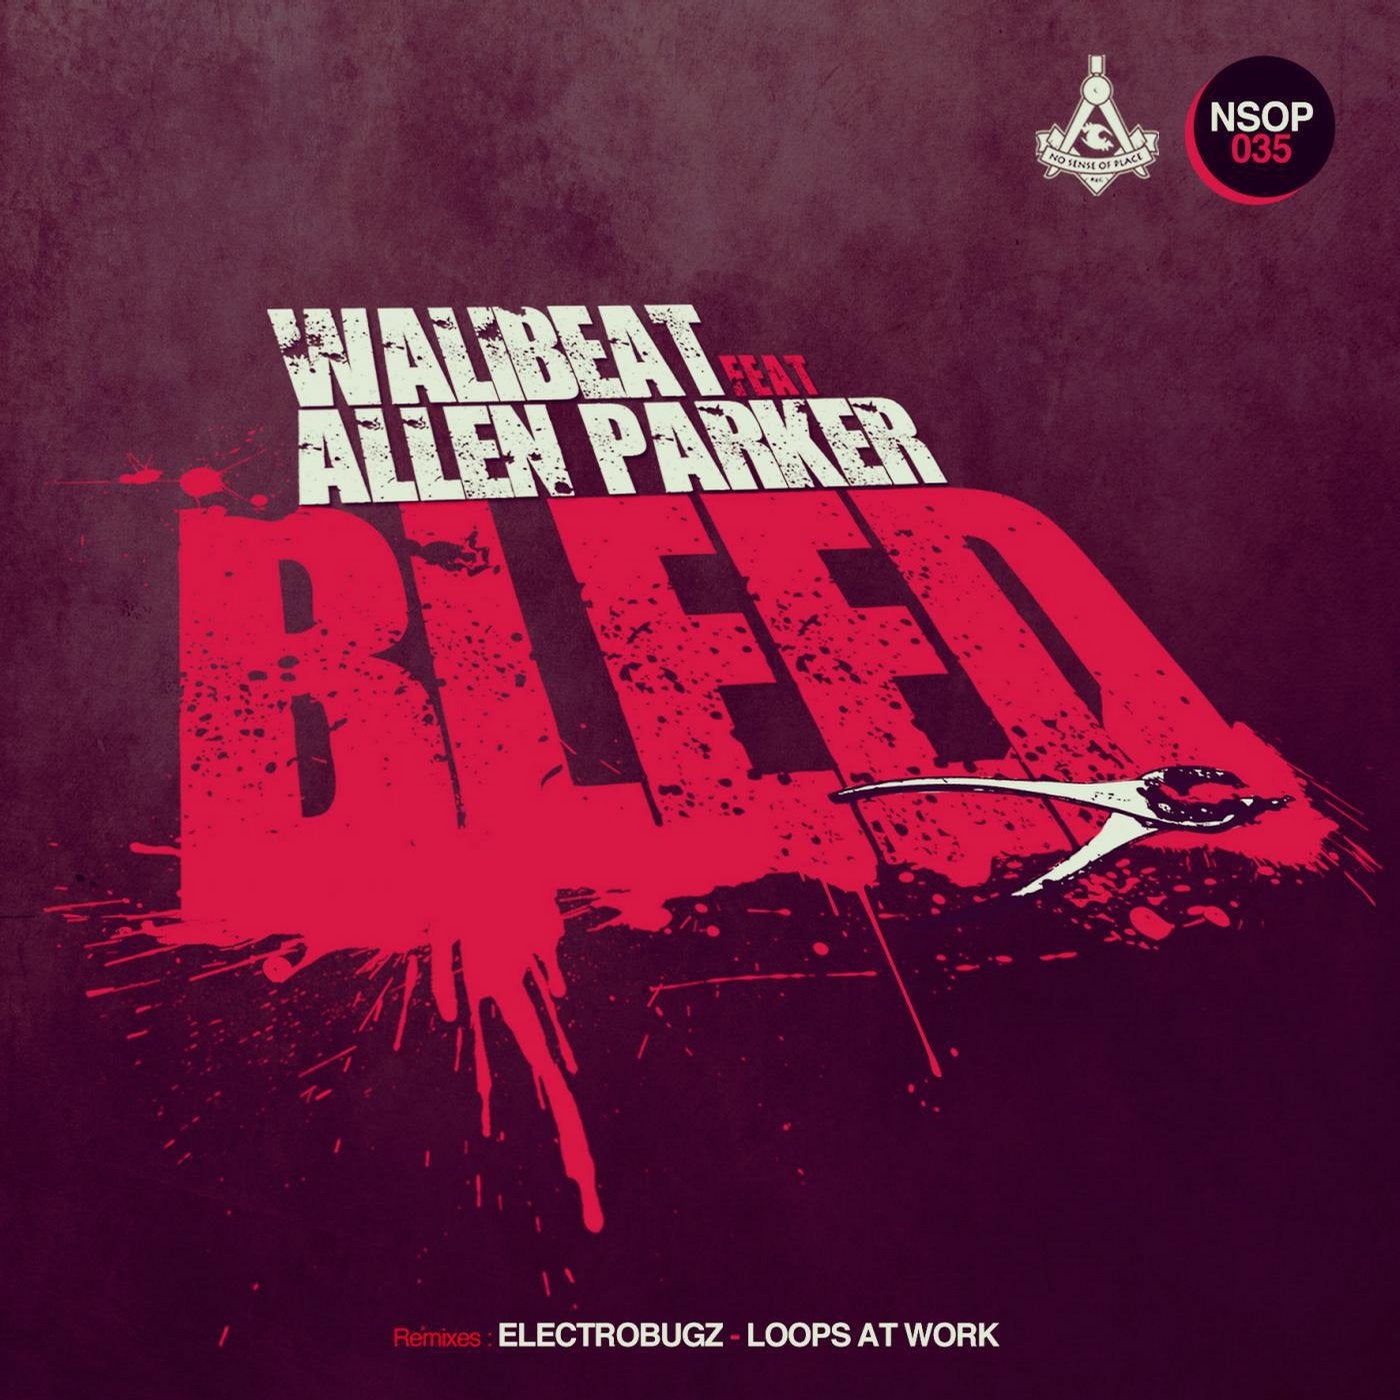 Bleed Feat. Allen Parker